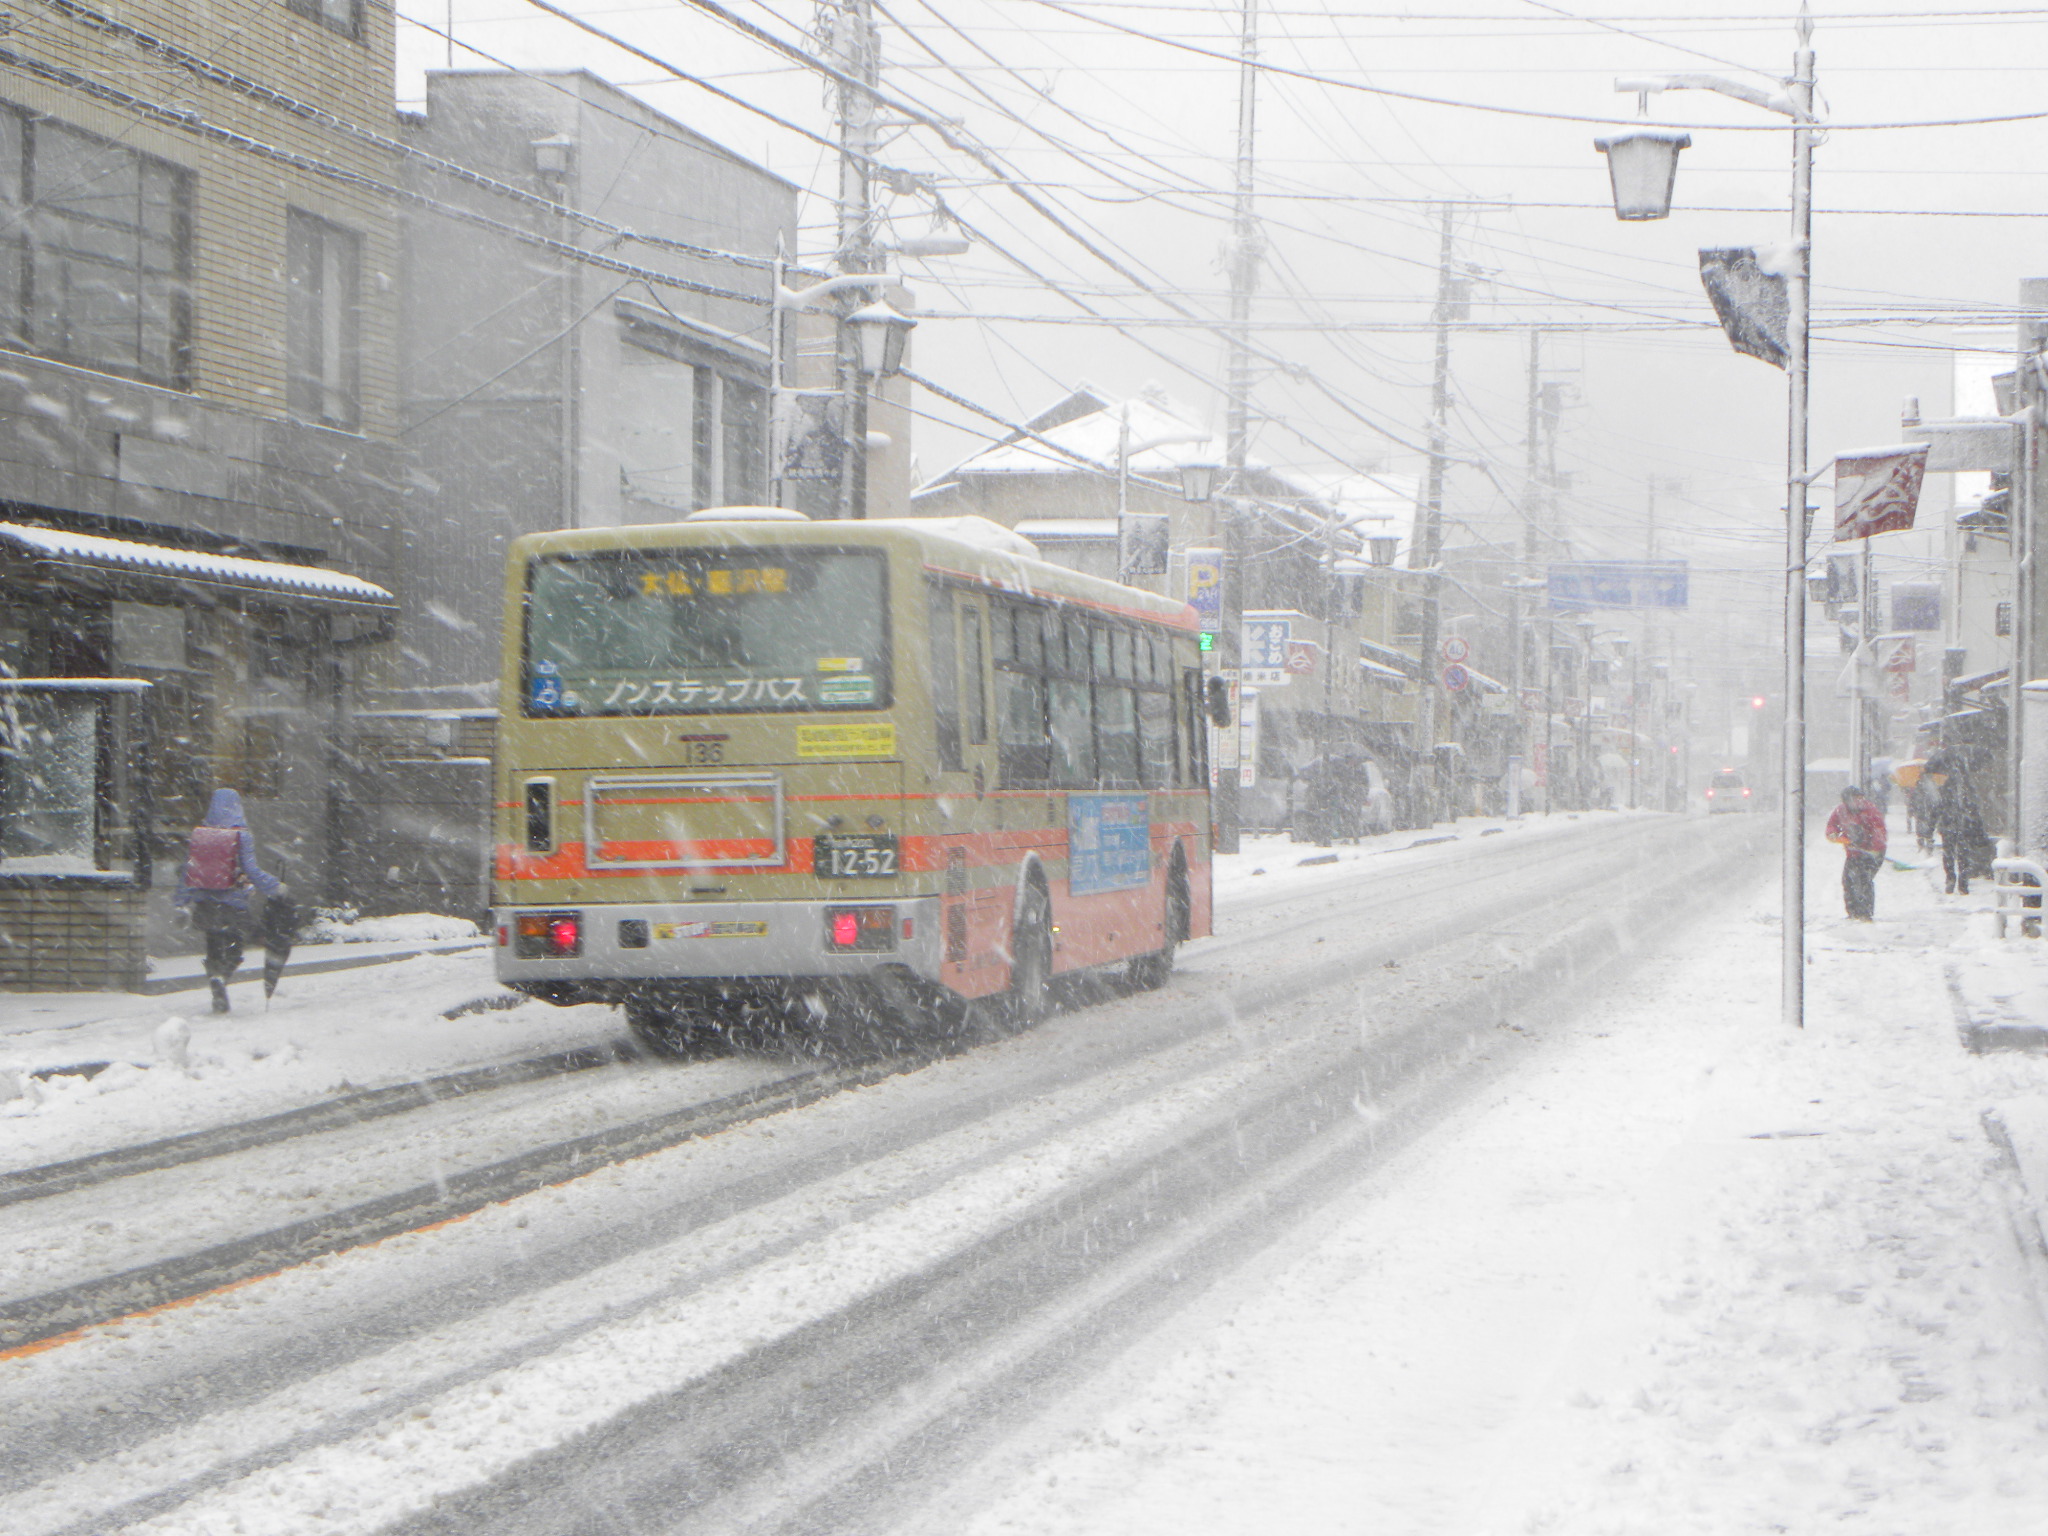 Kamakura Snow Storm